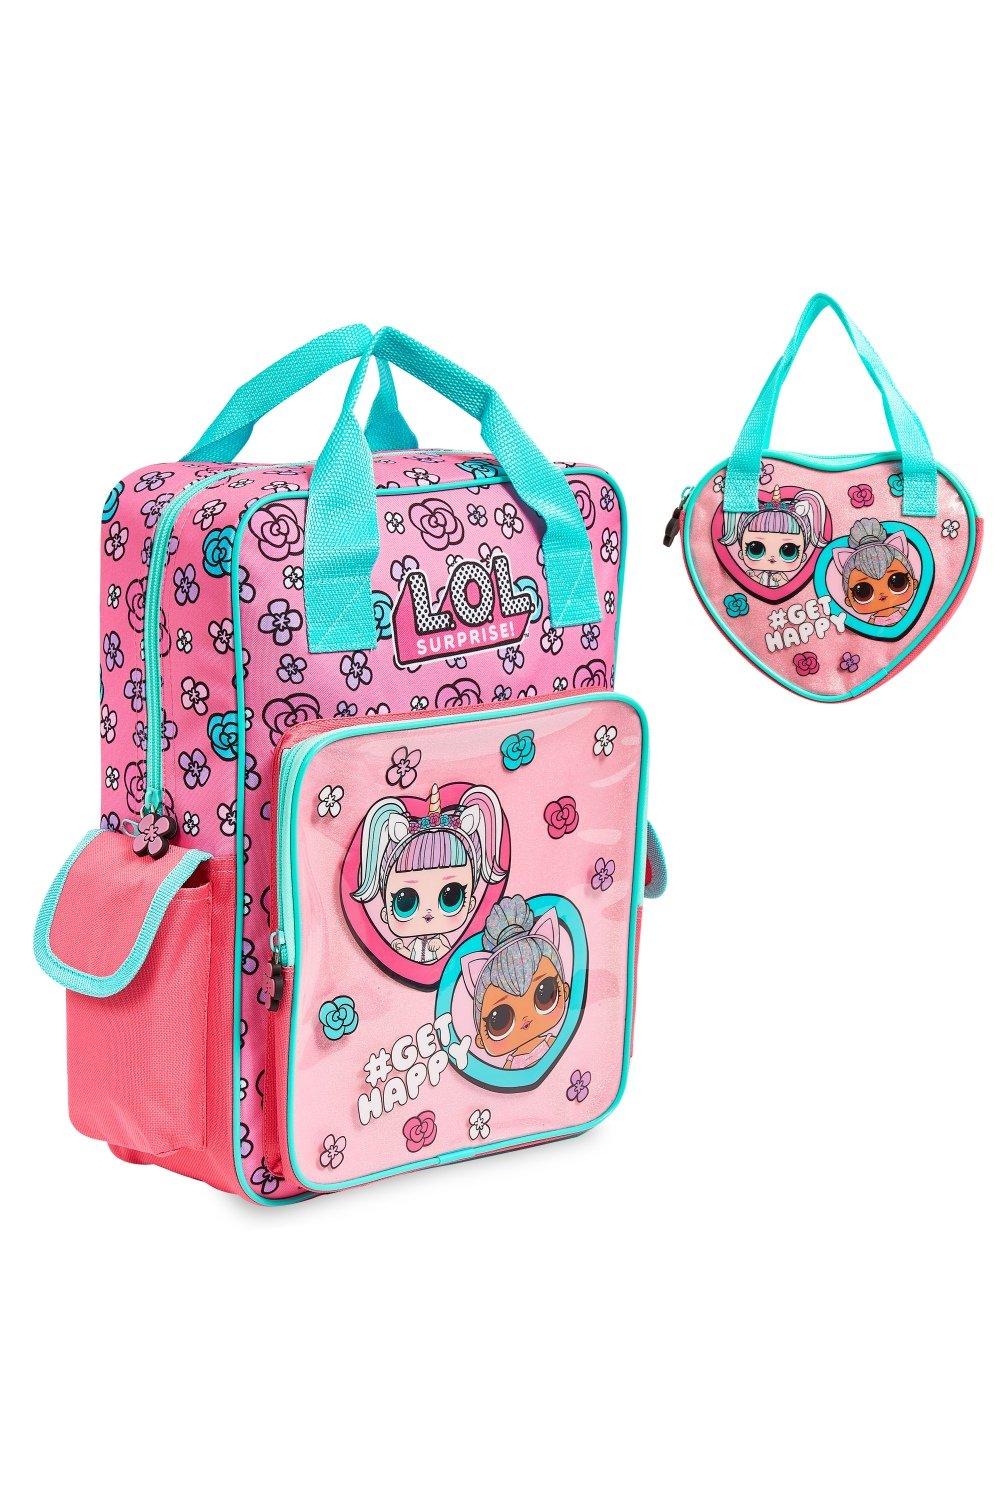 Сумочка и рюкзак Unicorn and Kitty Queen L.O.L. Surprise, розовый детские сумки детские школьные ранцы для детей милый рюкзак для мальчиков и девочек новый милый детский рюкзак с защитой от потери